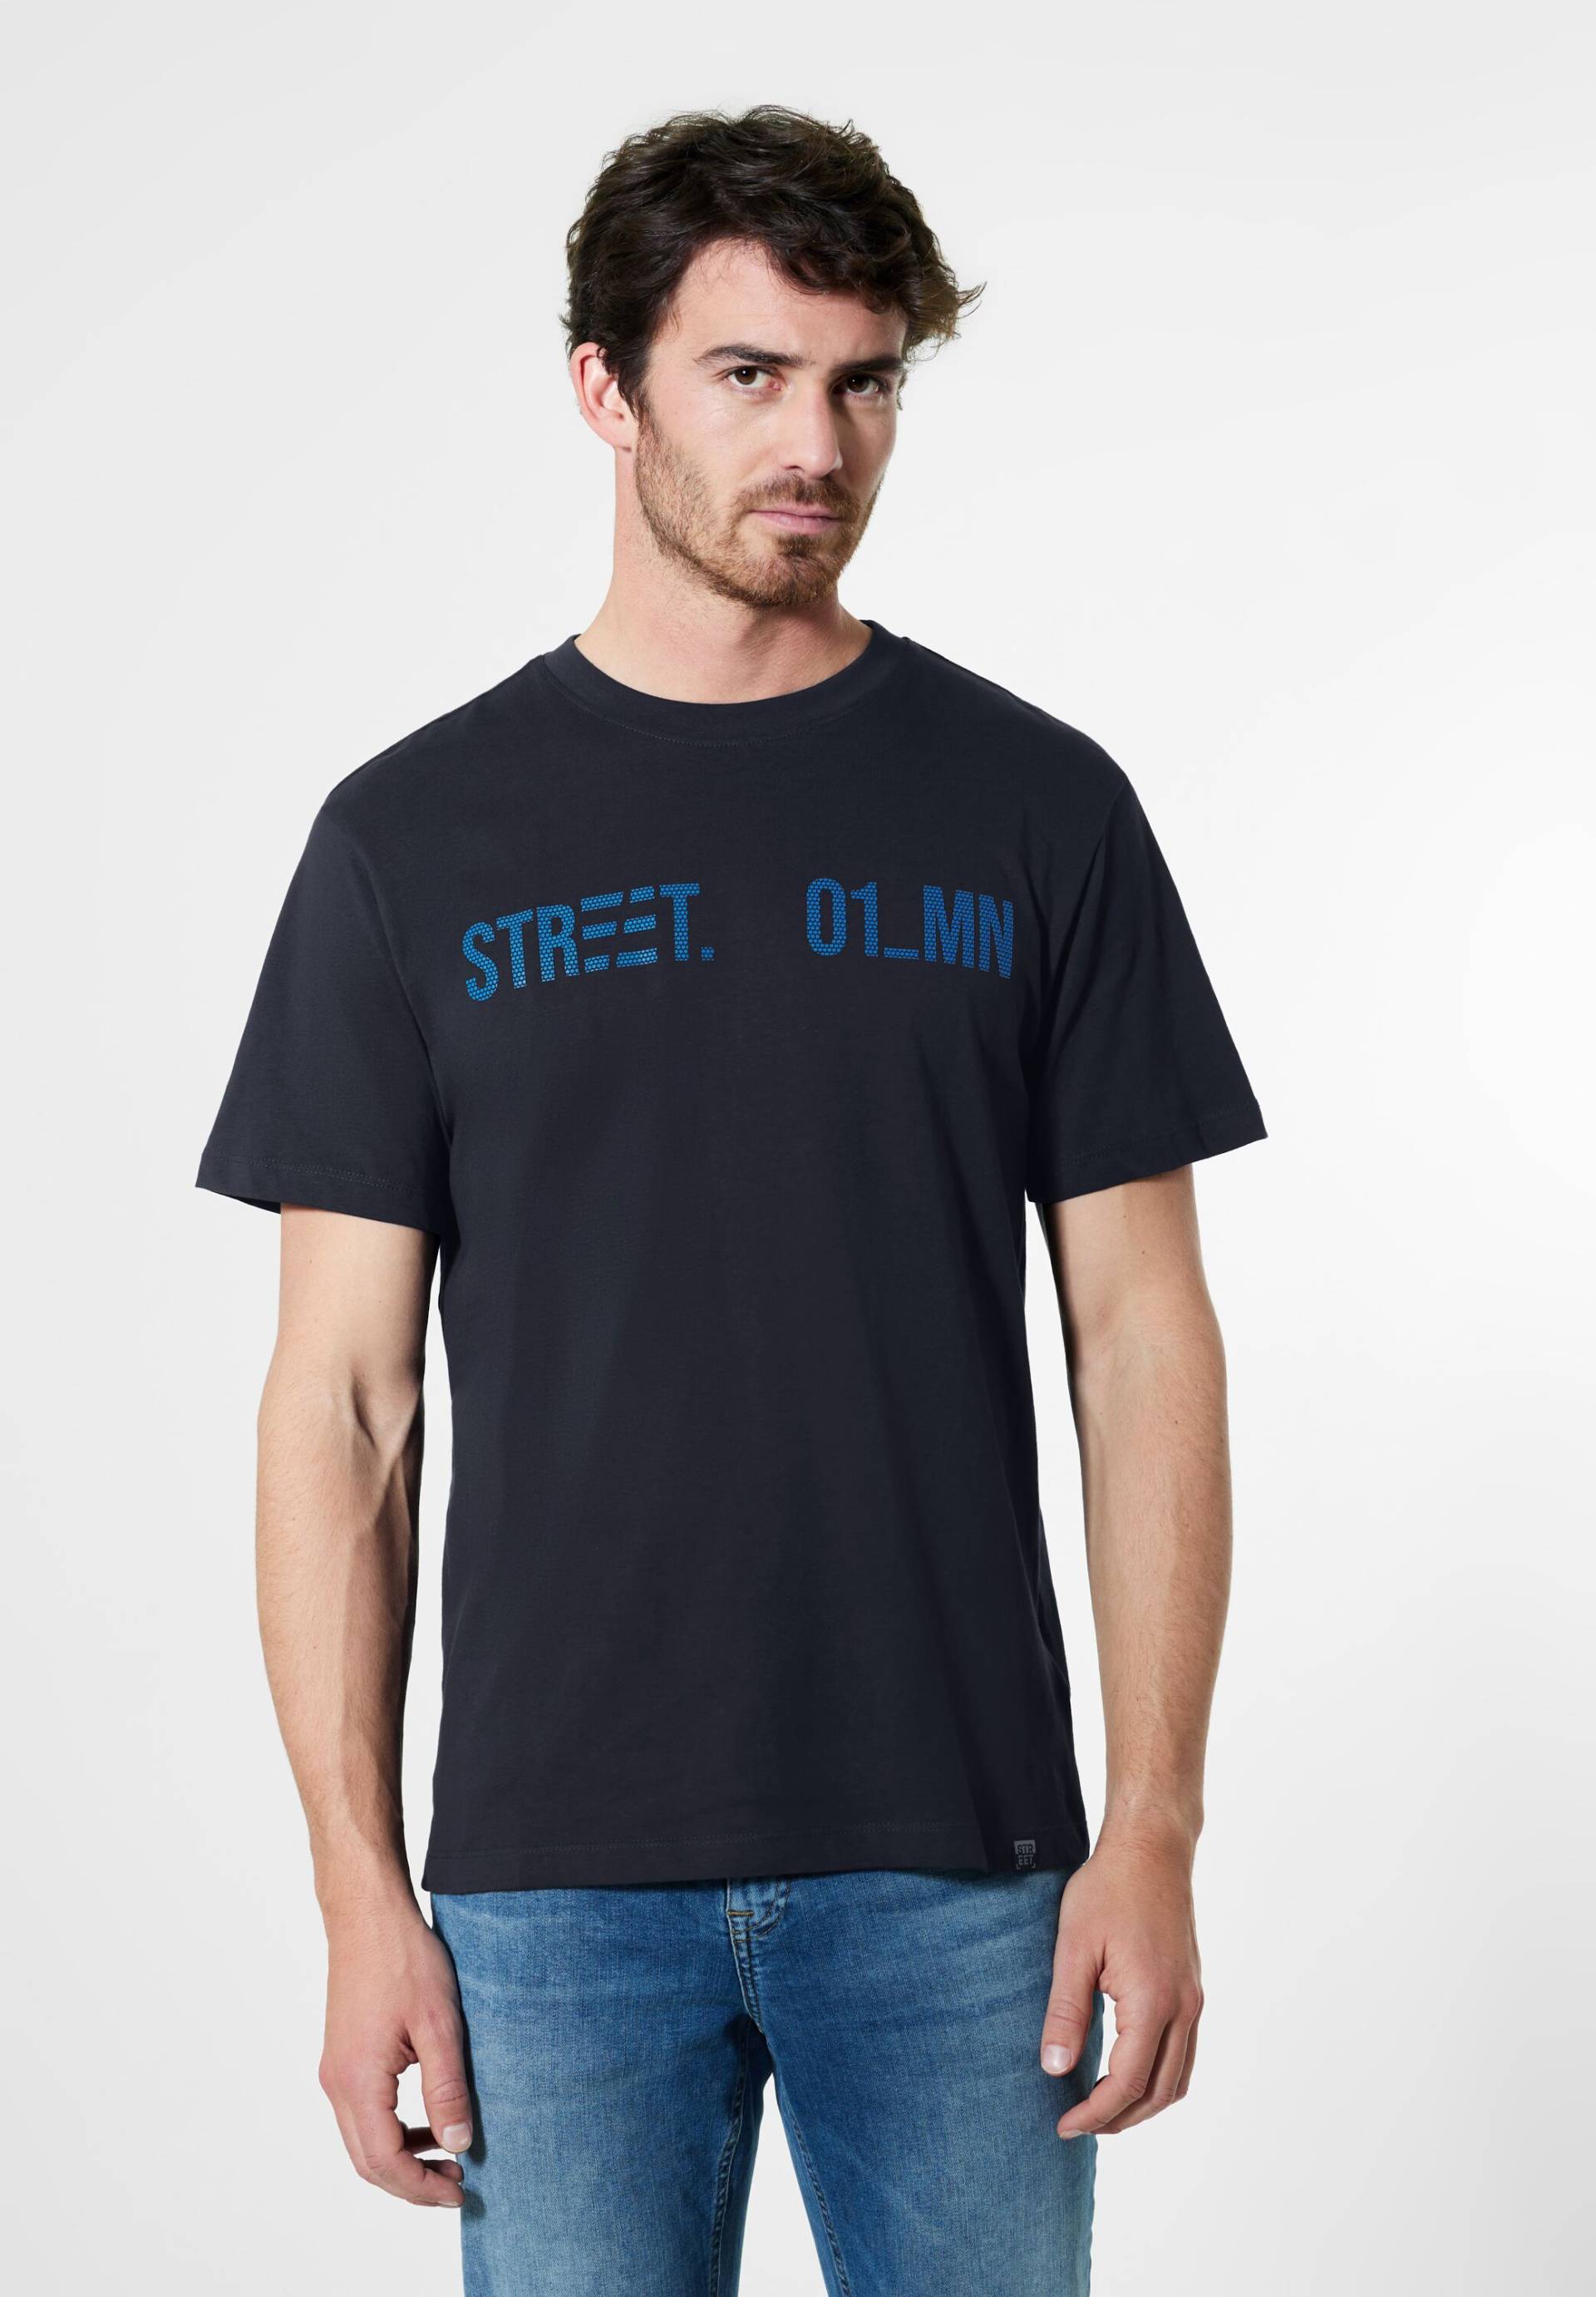 STREET ONE MEN T-Shirt von Street One Men